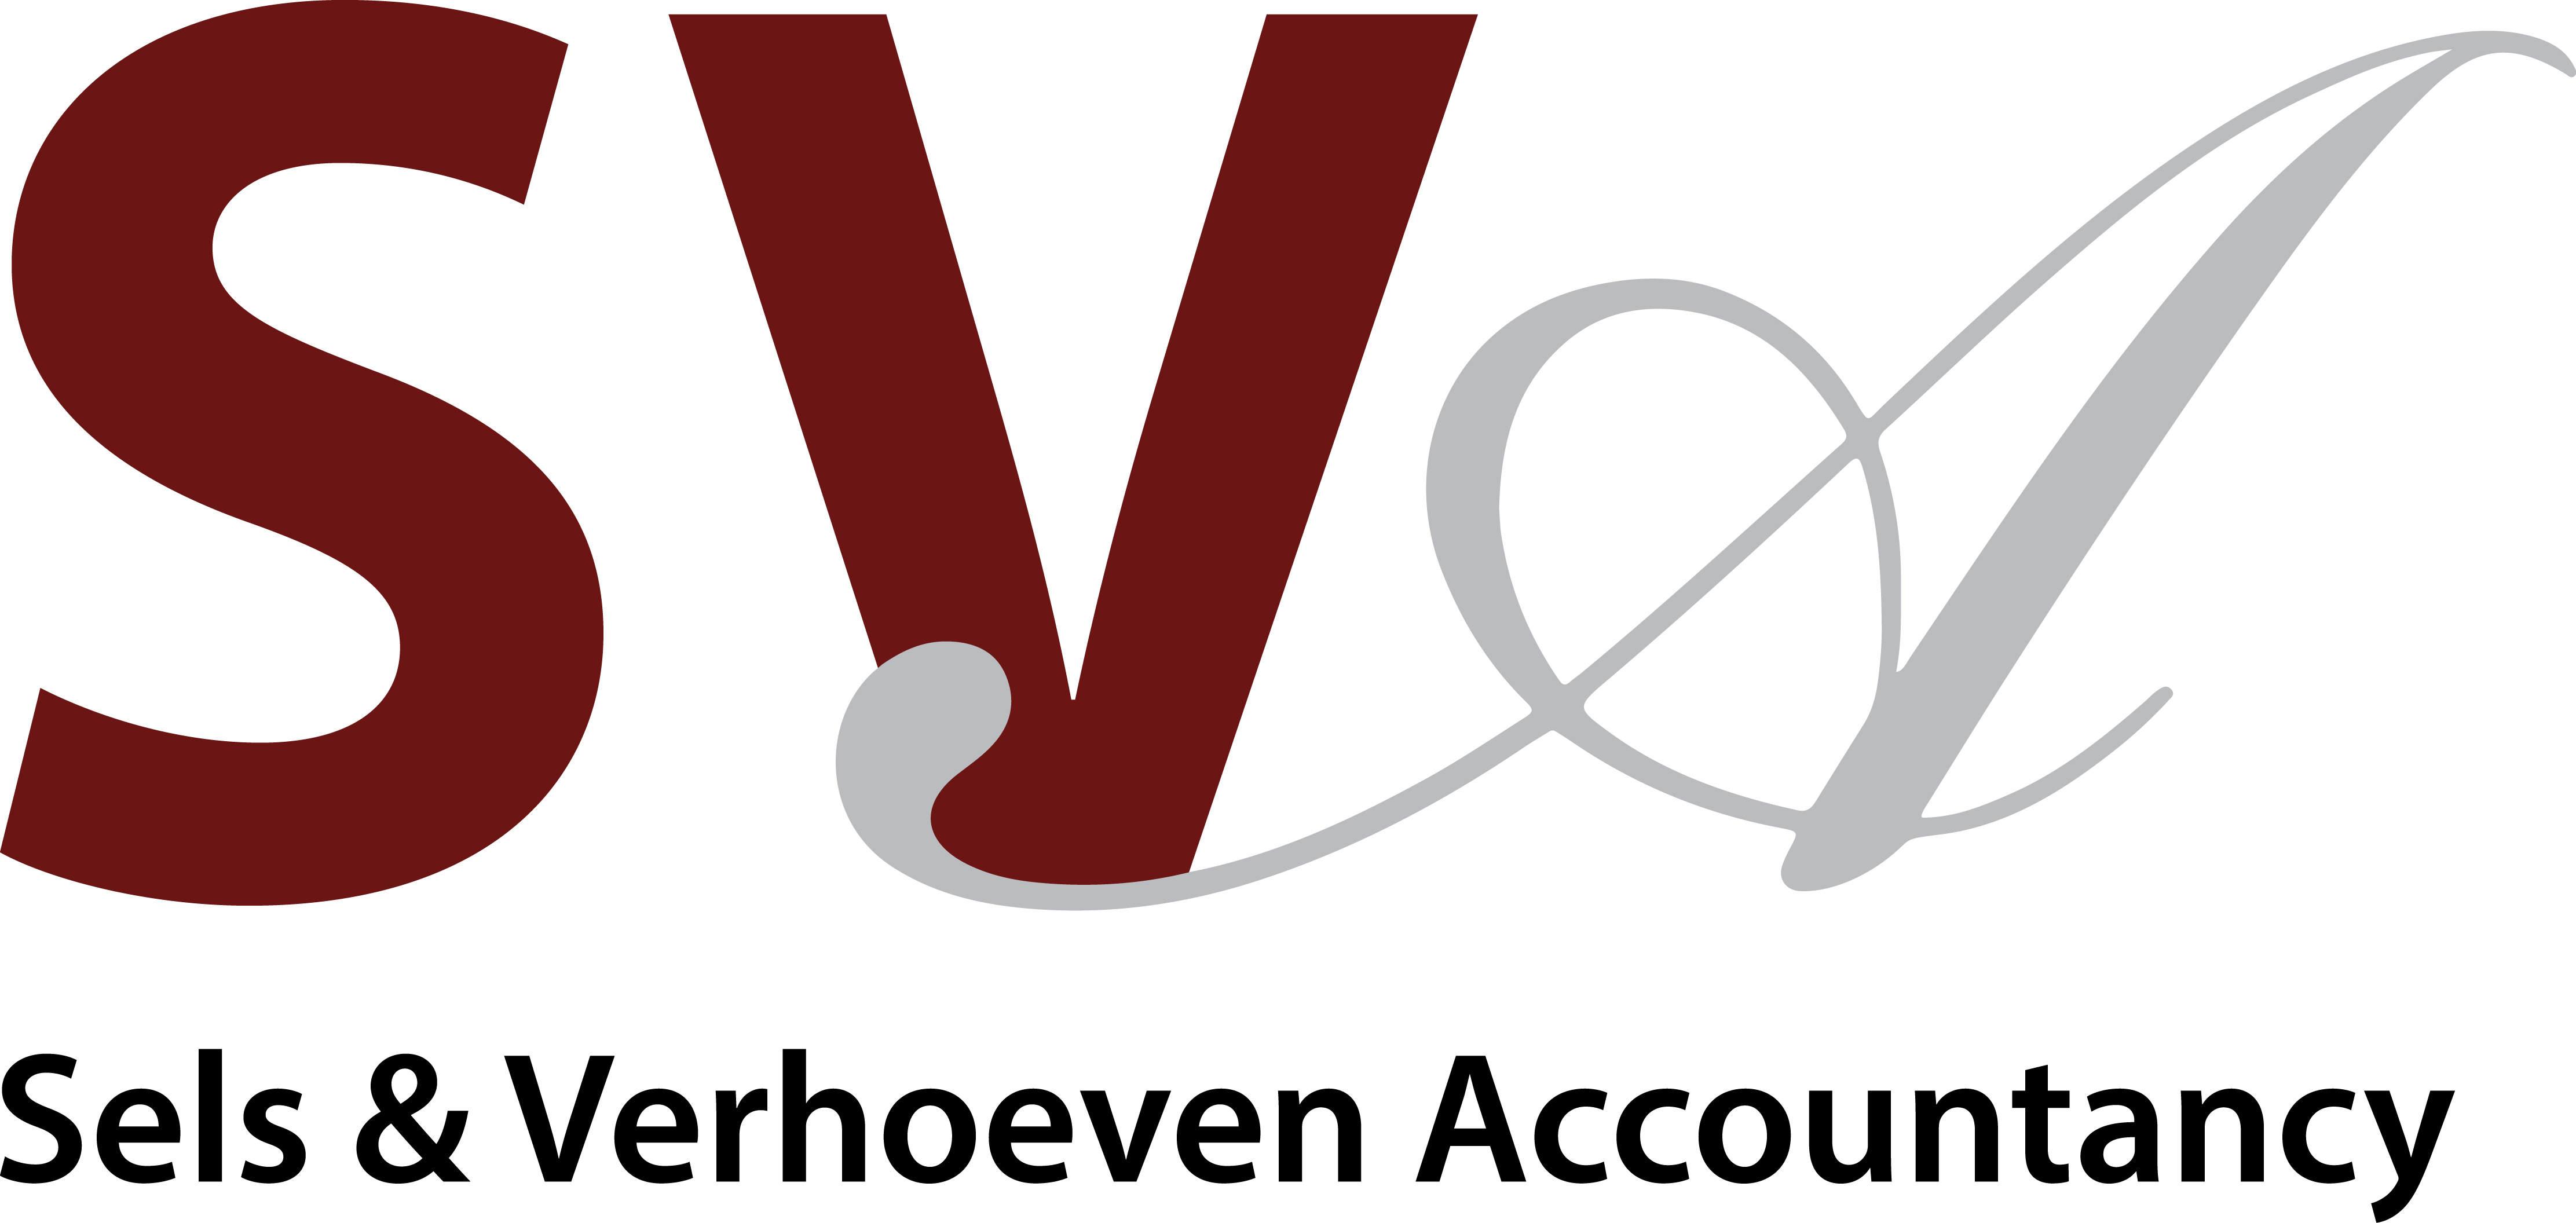 Sels & Verhoeven Accountancy logo